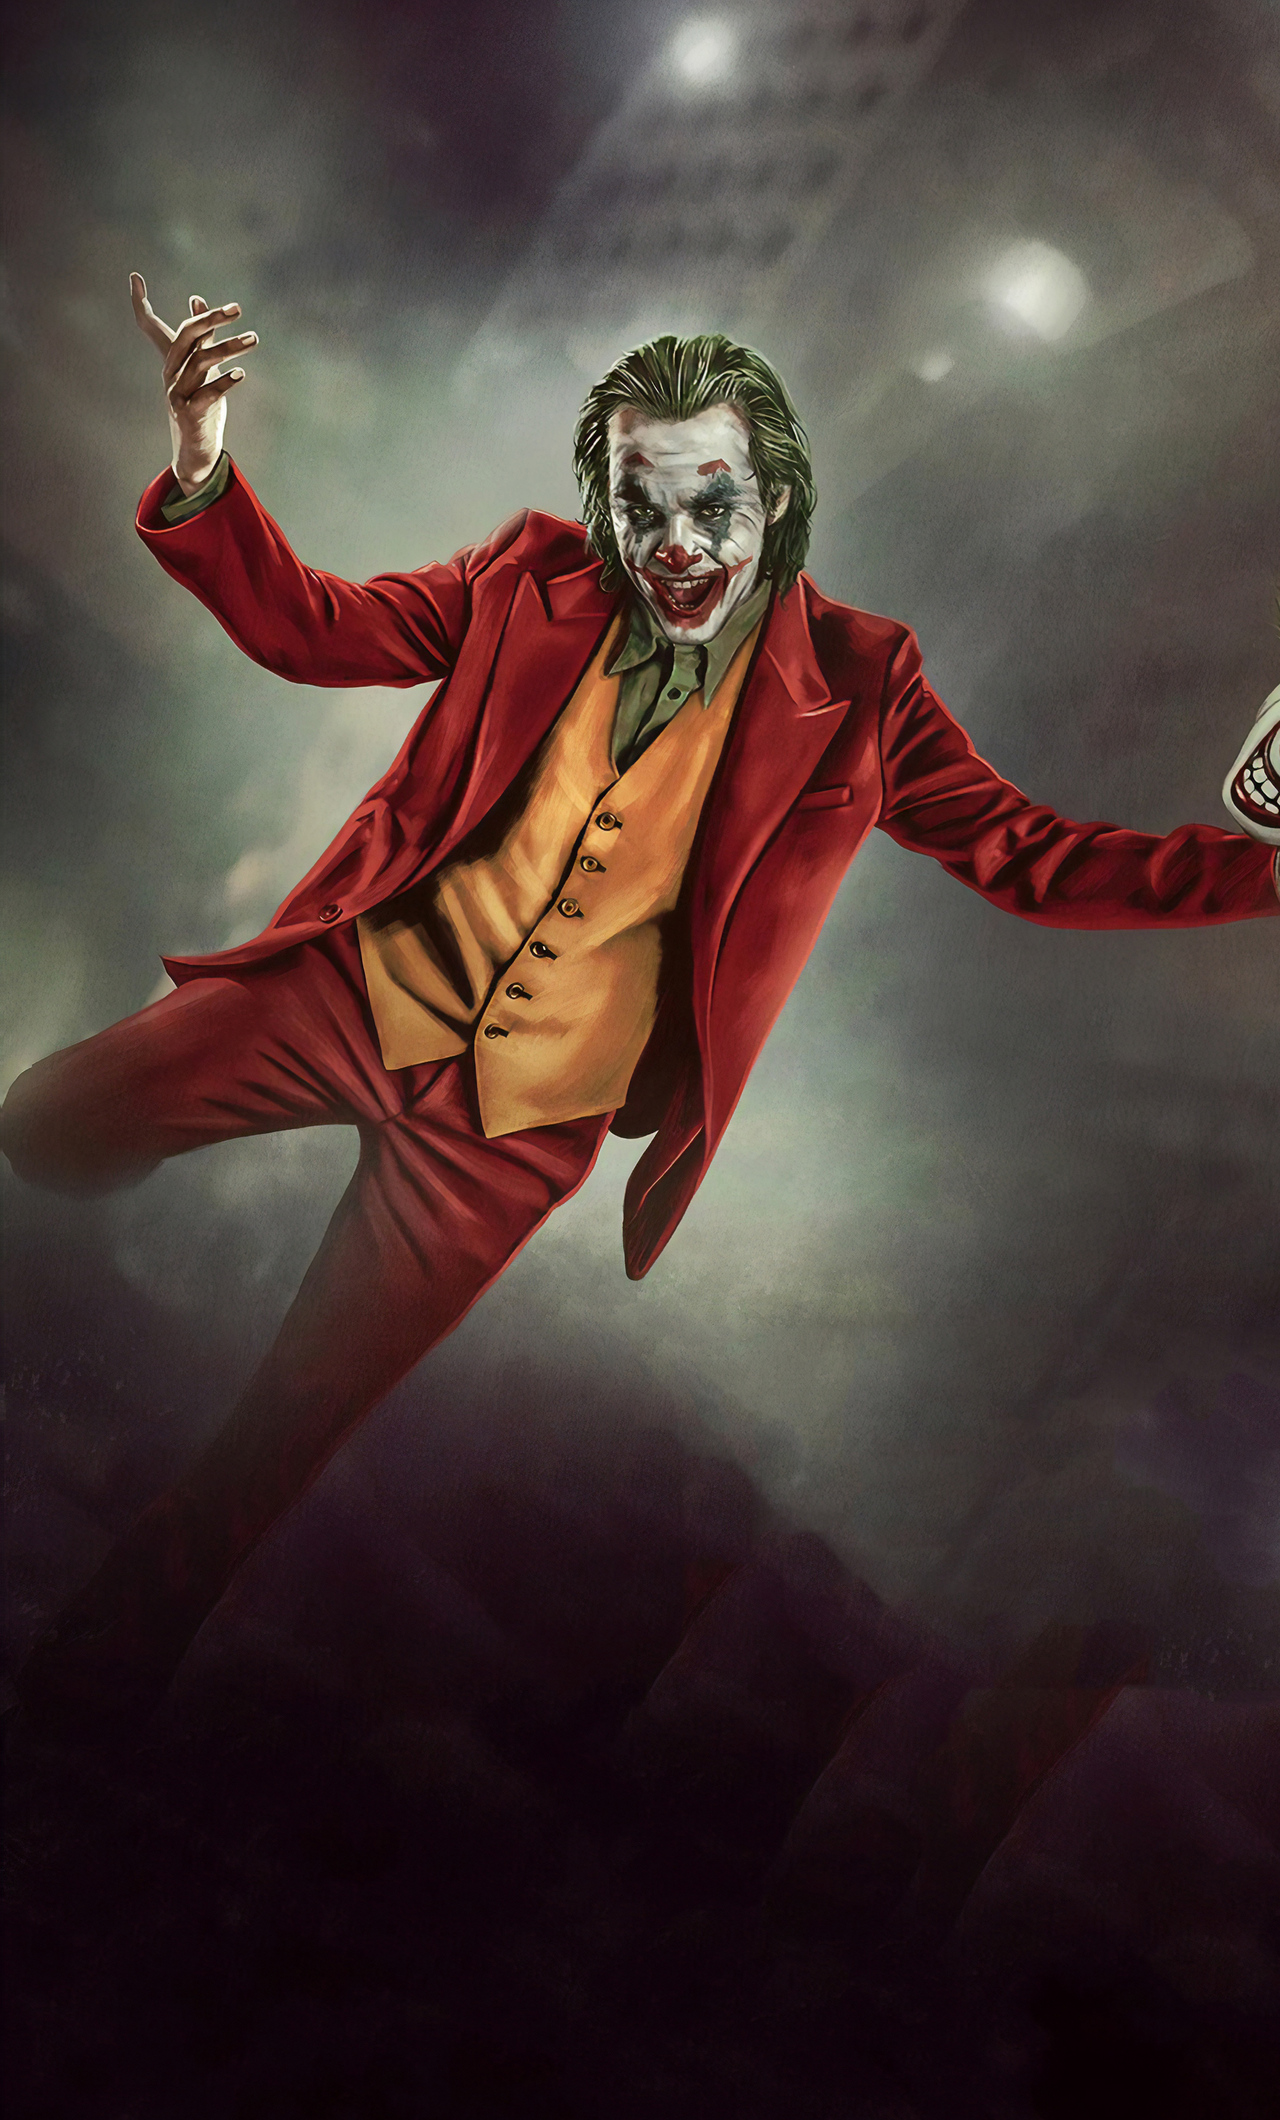 2560x1080 Resolution Joker 2019 Movie 4K 2560x1080 Resolution Wallpaper -  Wallpapers Den